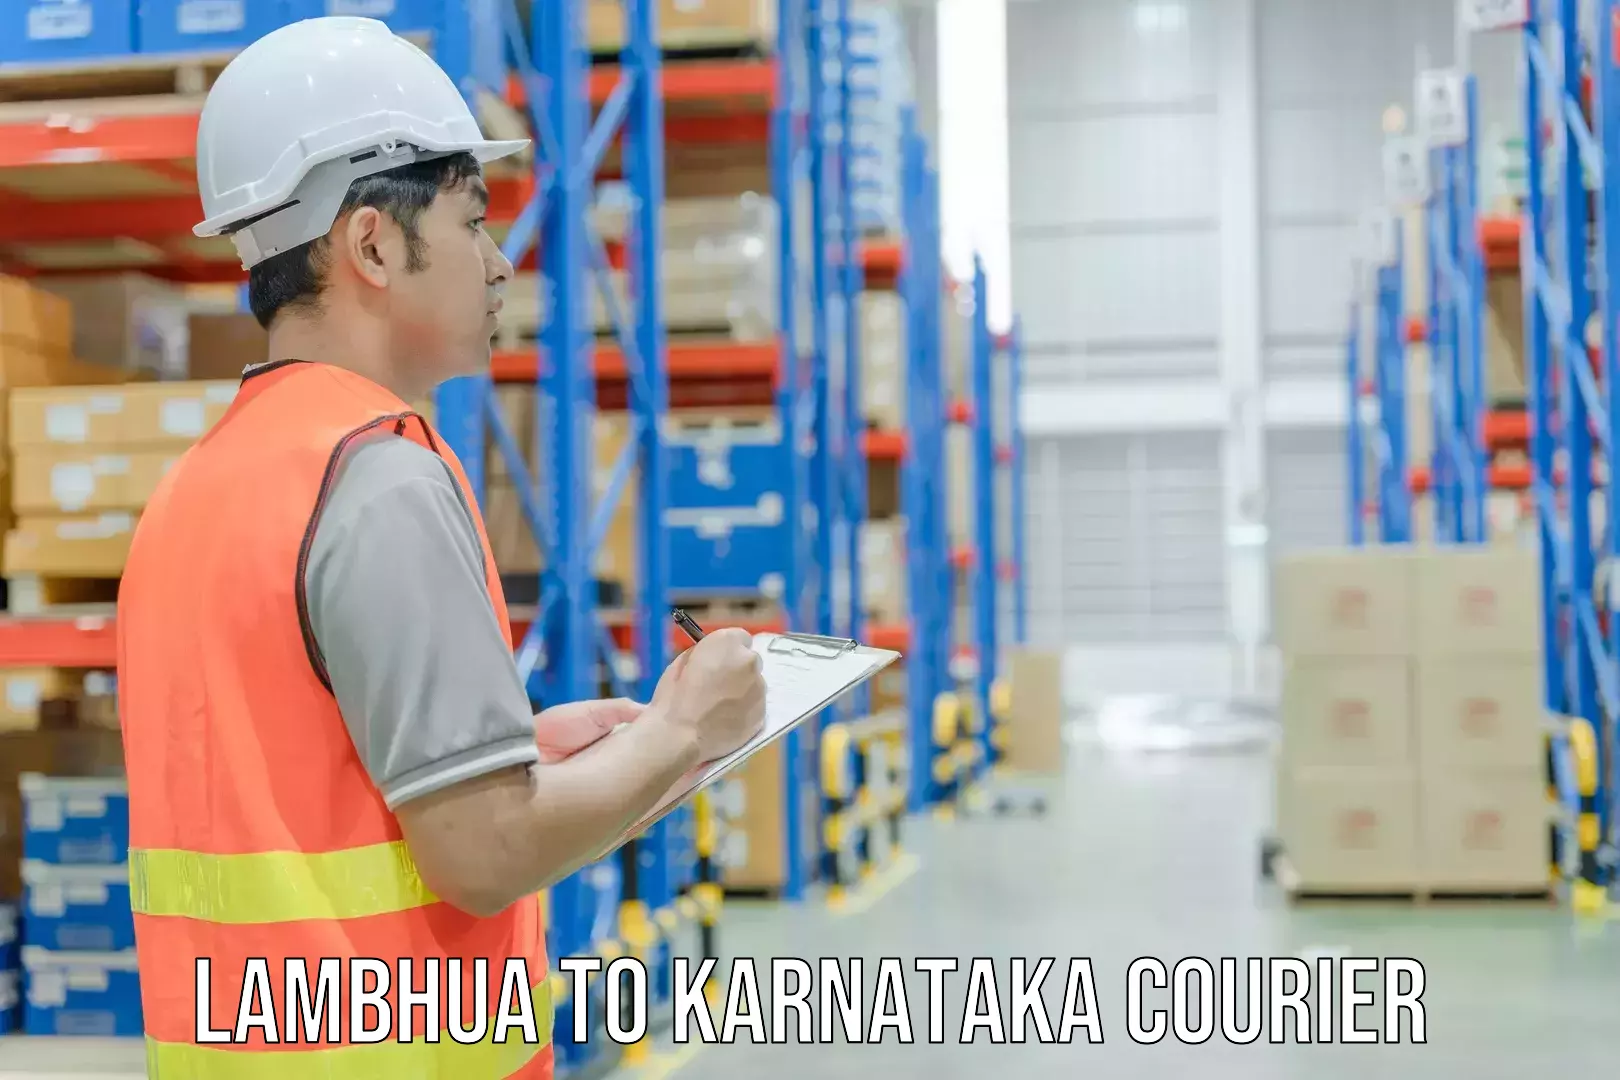 Courier service partnerships Lambhua to Mundgod